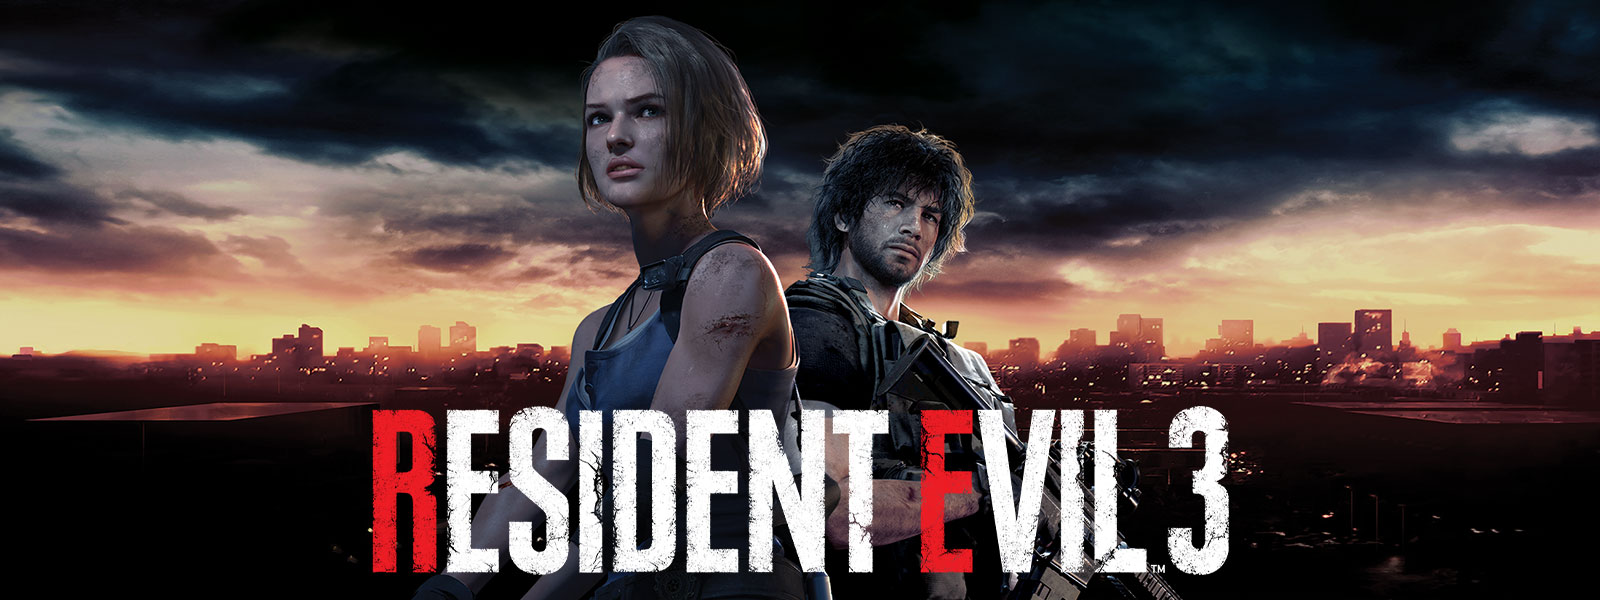 Resident Evil 3: Jill Valentine och Carlos Oliveira med Raccoon City i bakgrunden